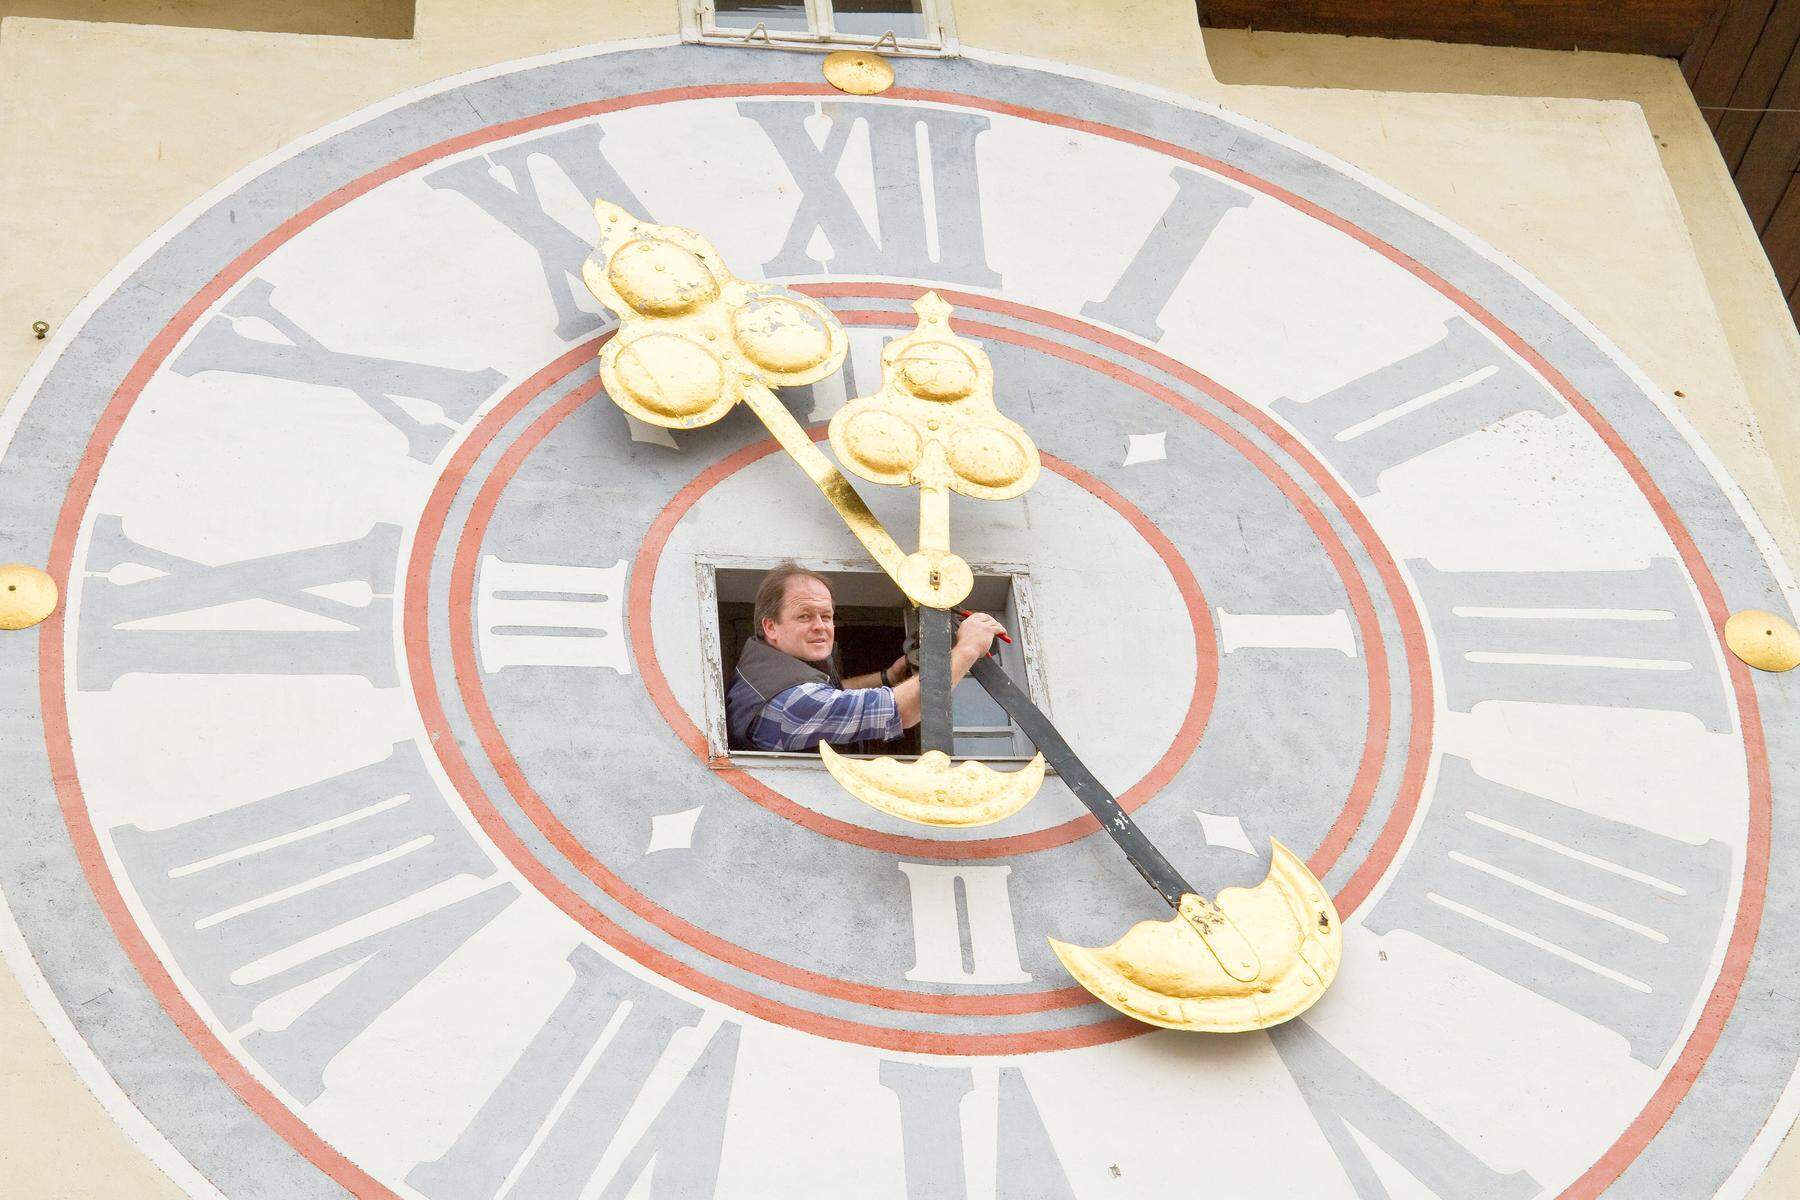 Zeitumstellung: Grazer Uhrturm: Wer hat an der Uhr gedreht?